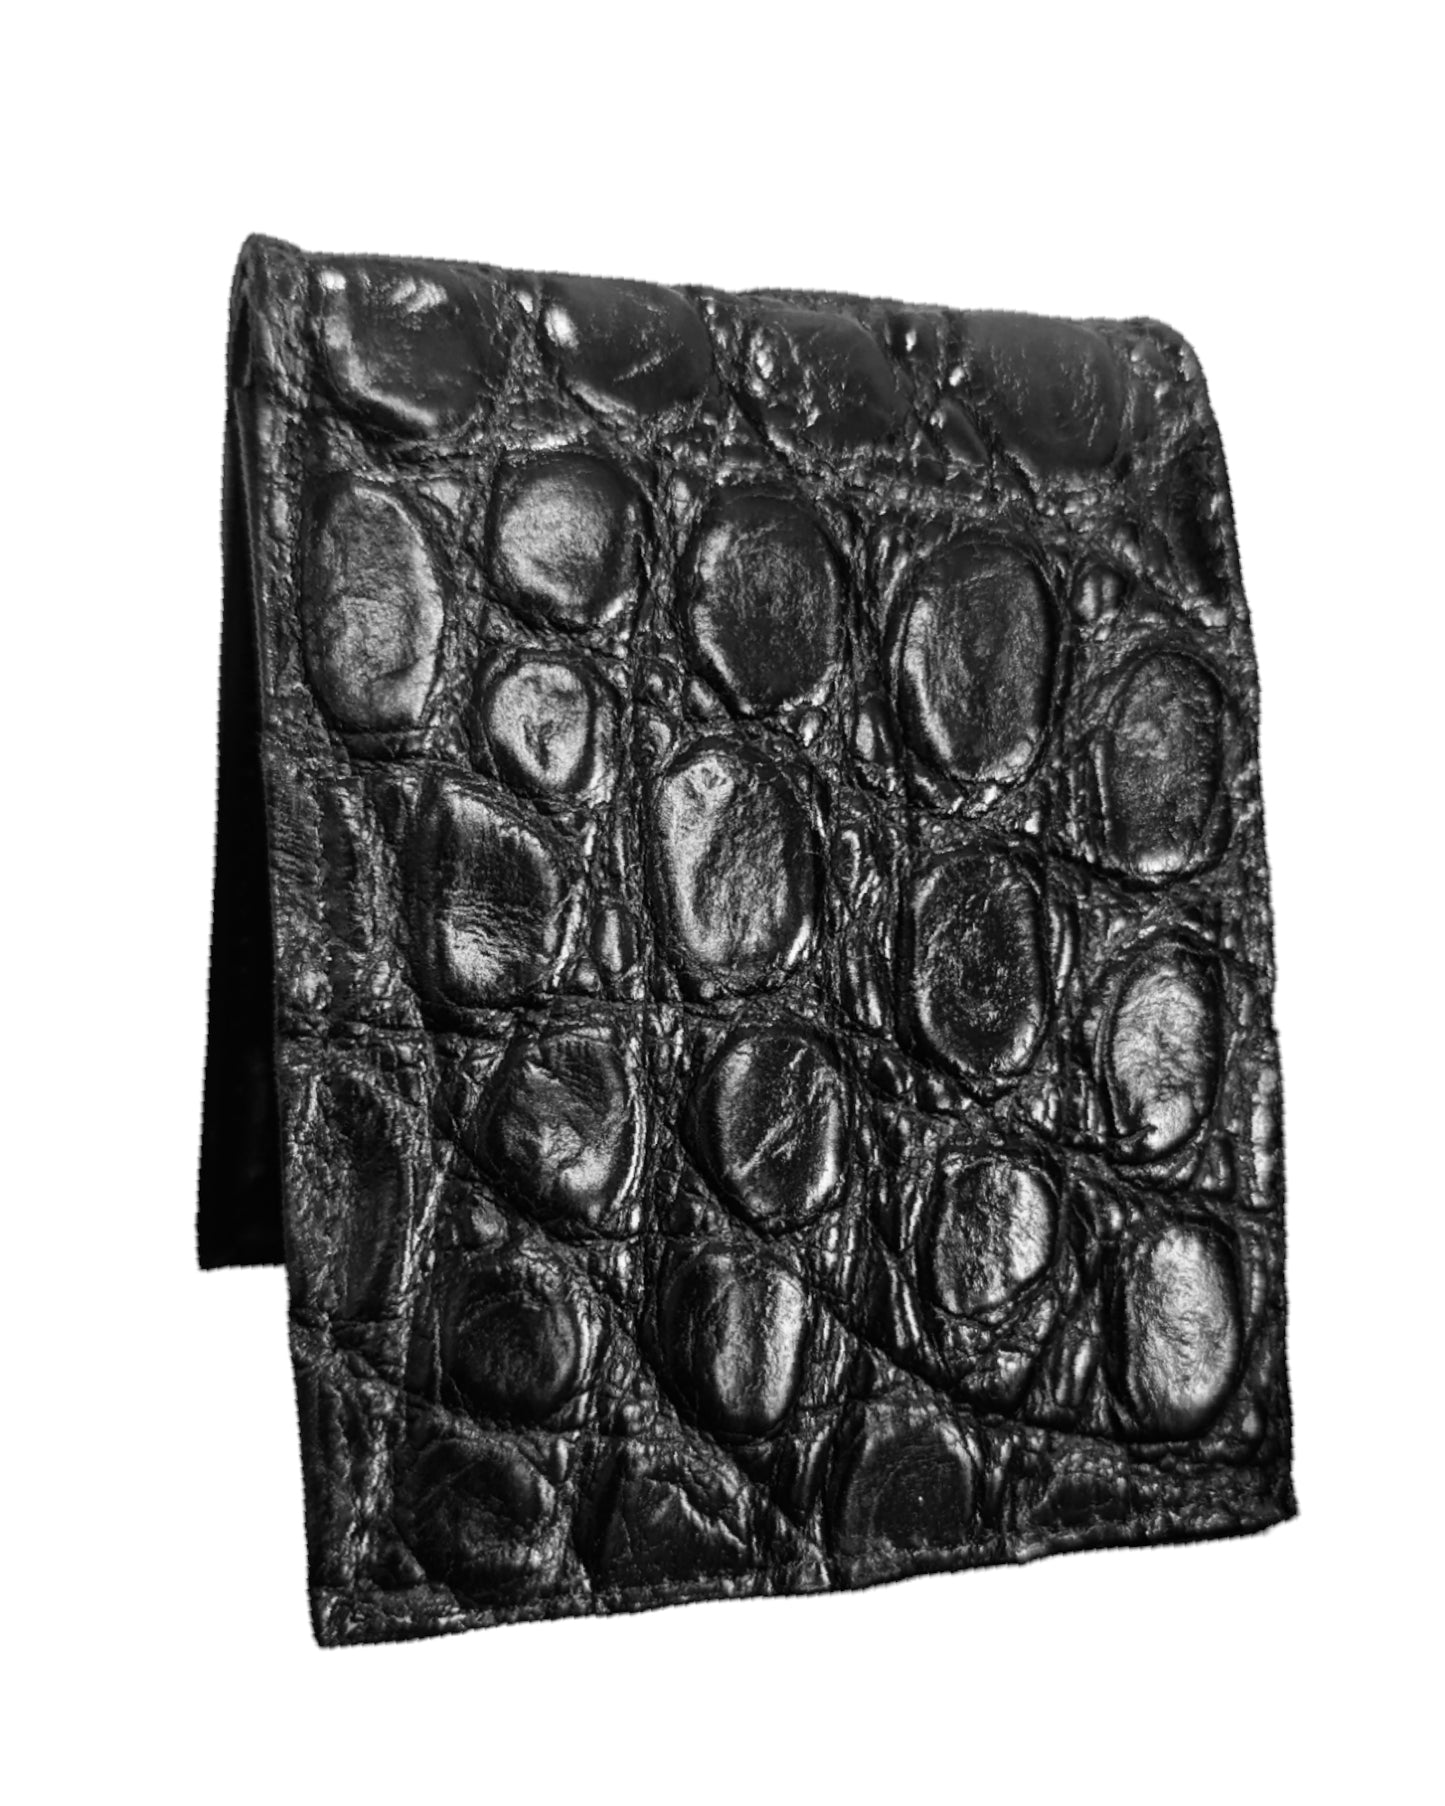 Men's Obsidian Black Alligator Leather Billfold 6 Card Slot Wallet